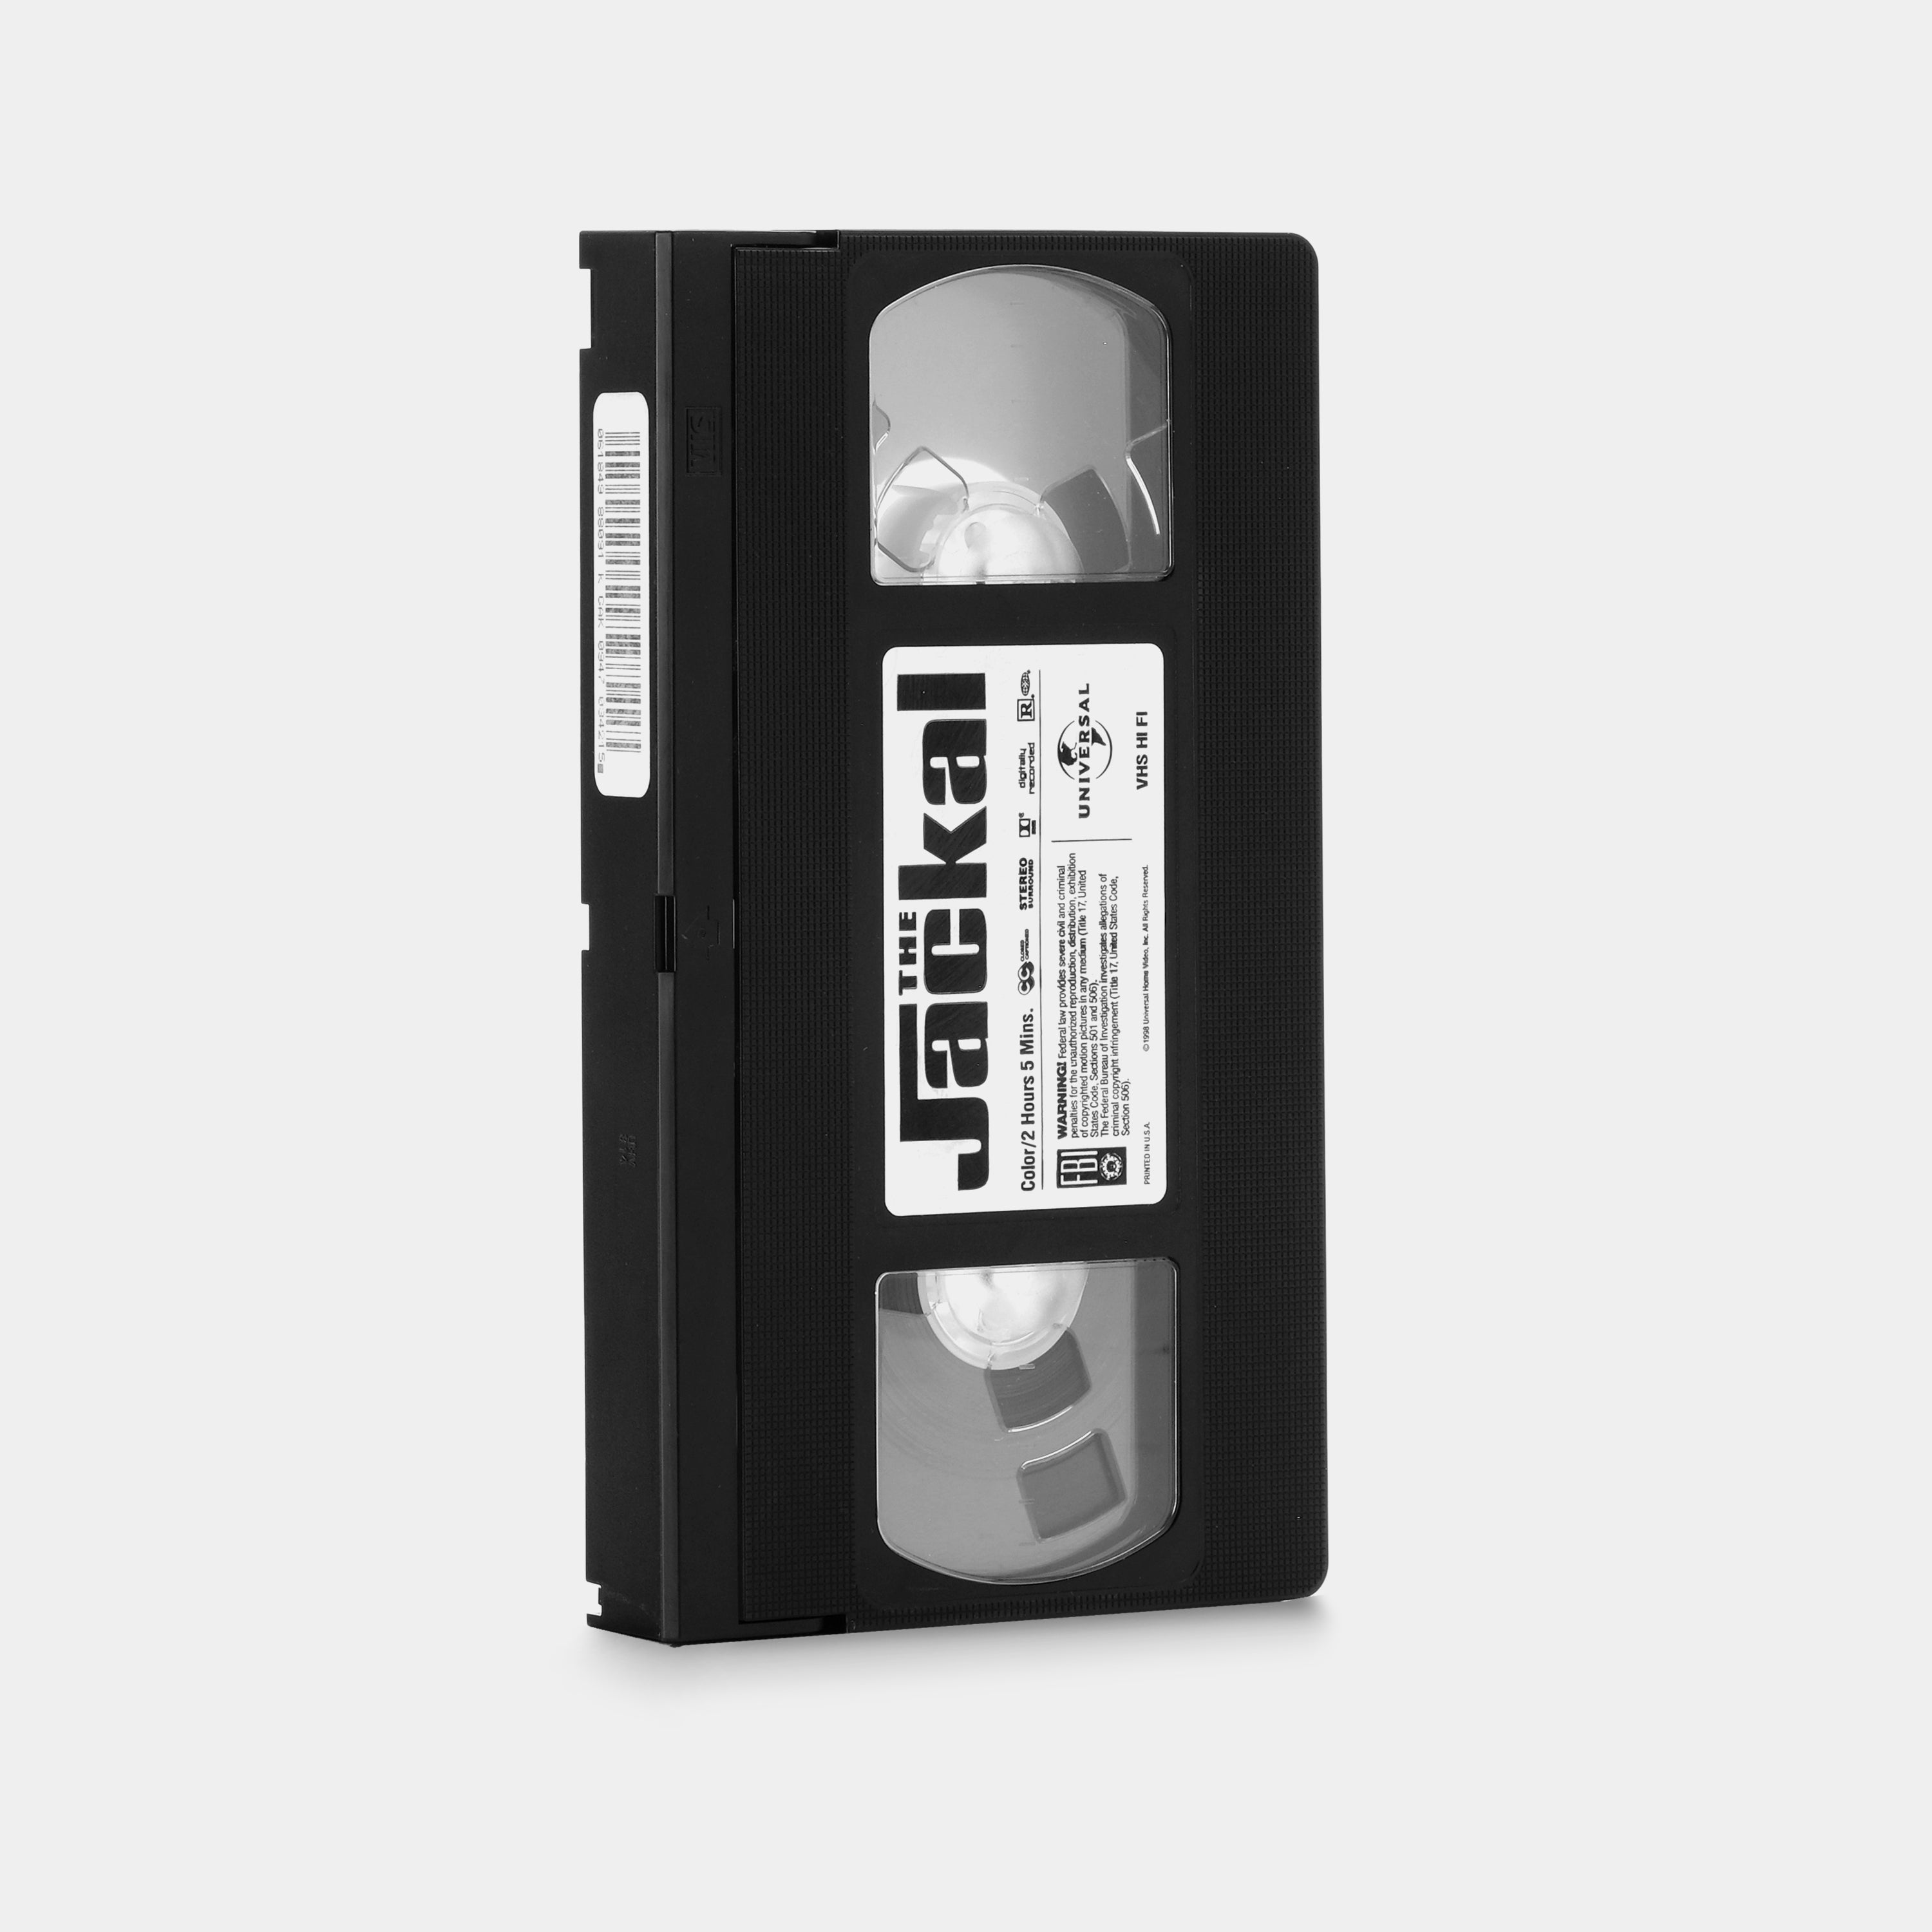 The Jackal VHS Tape